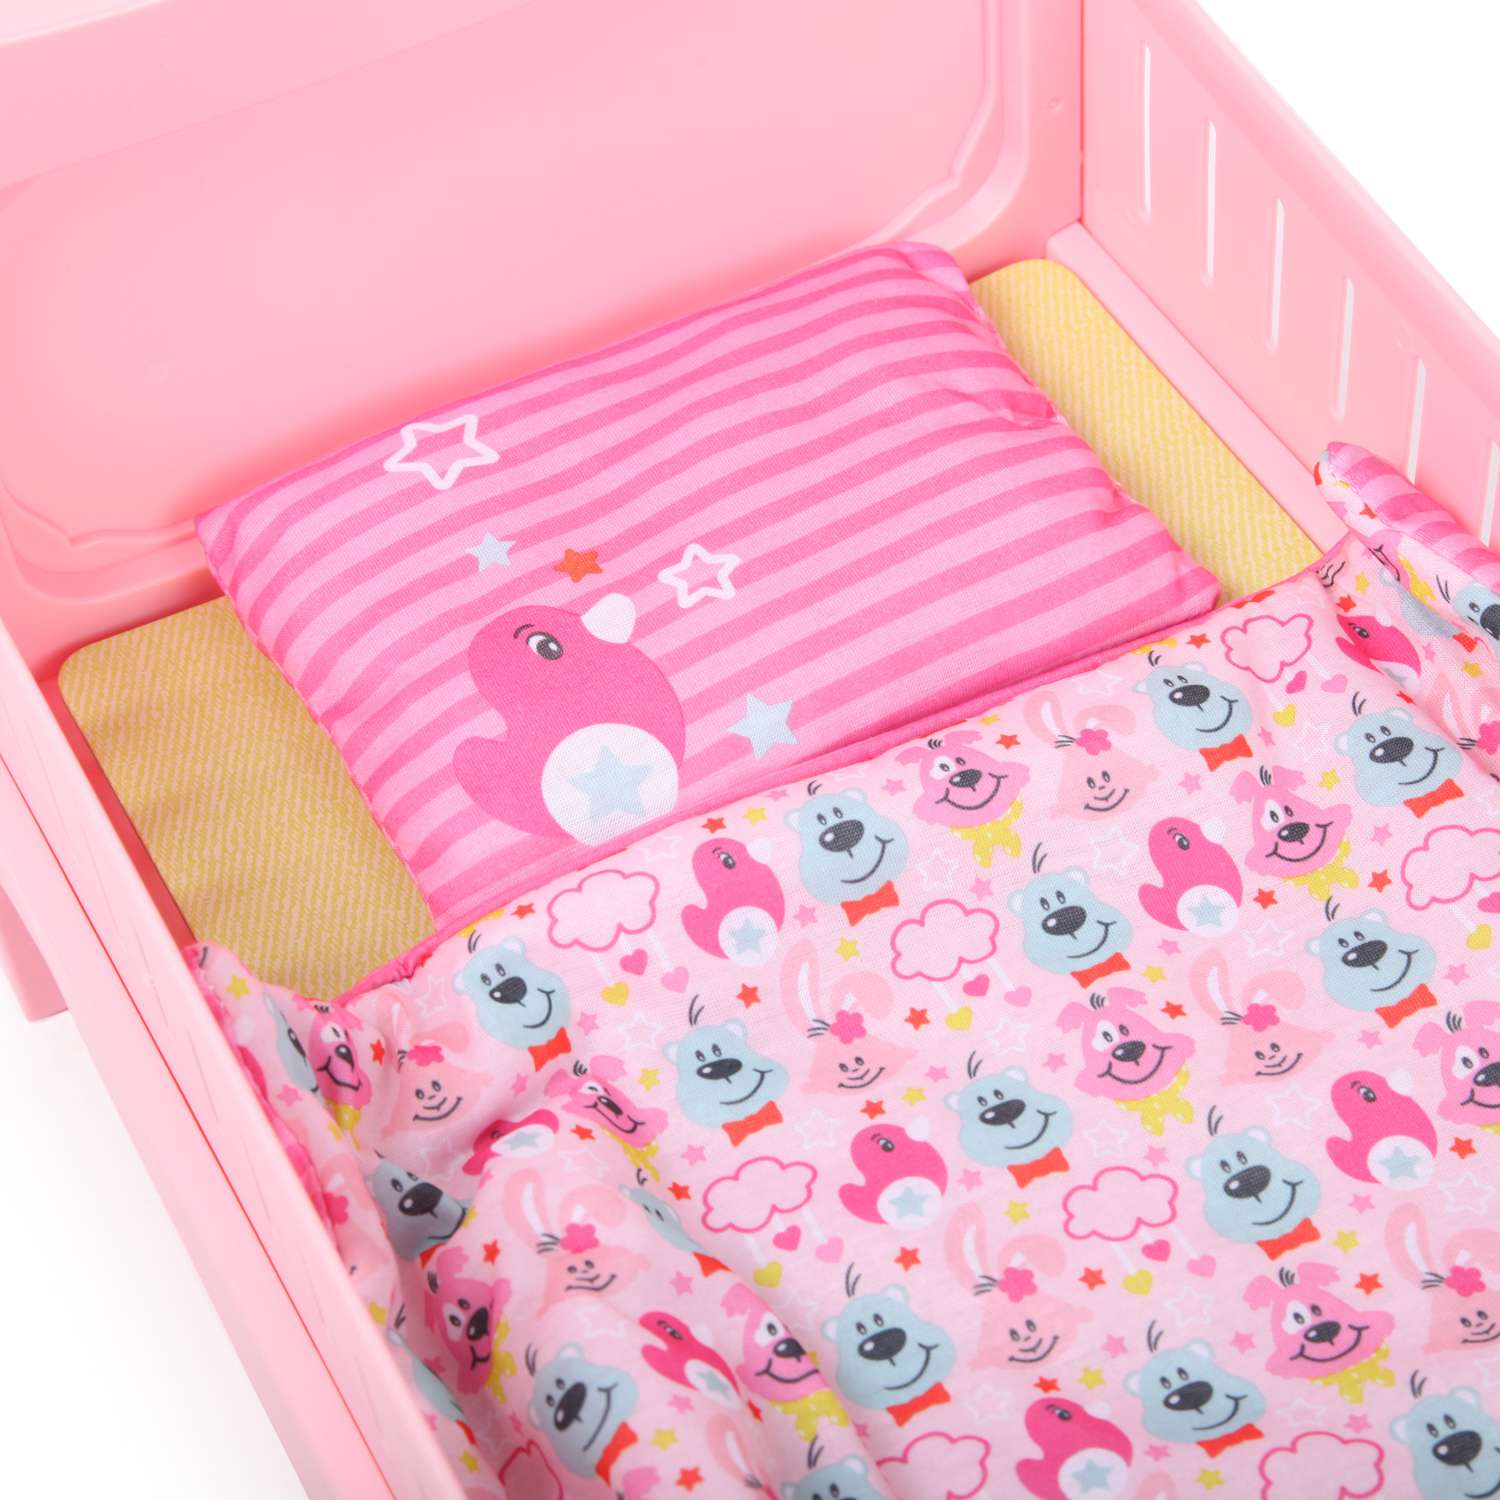 Набор для куклы Zapf Creation Baby Born кровать 824-399 824-399 - фото 6